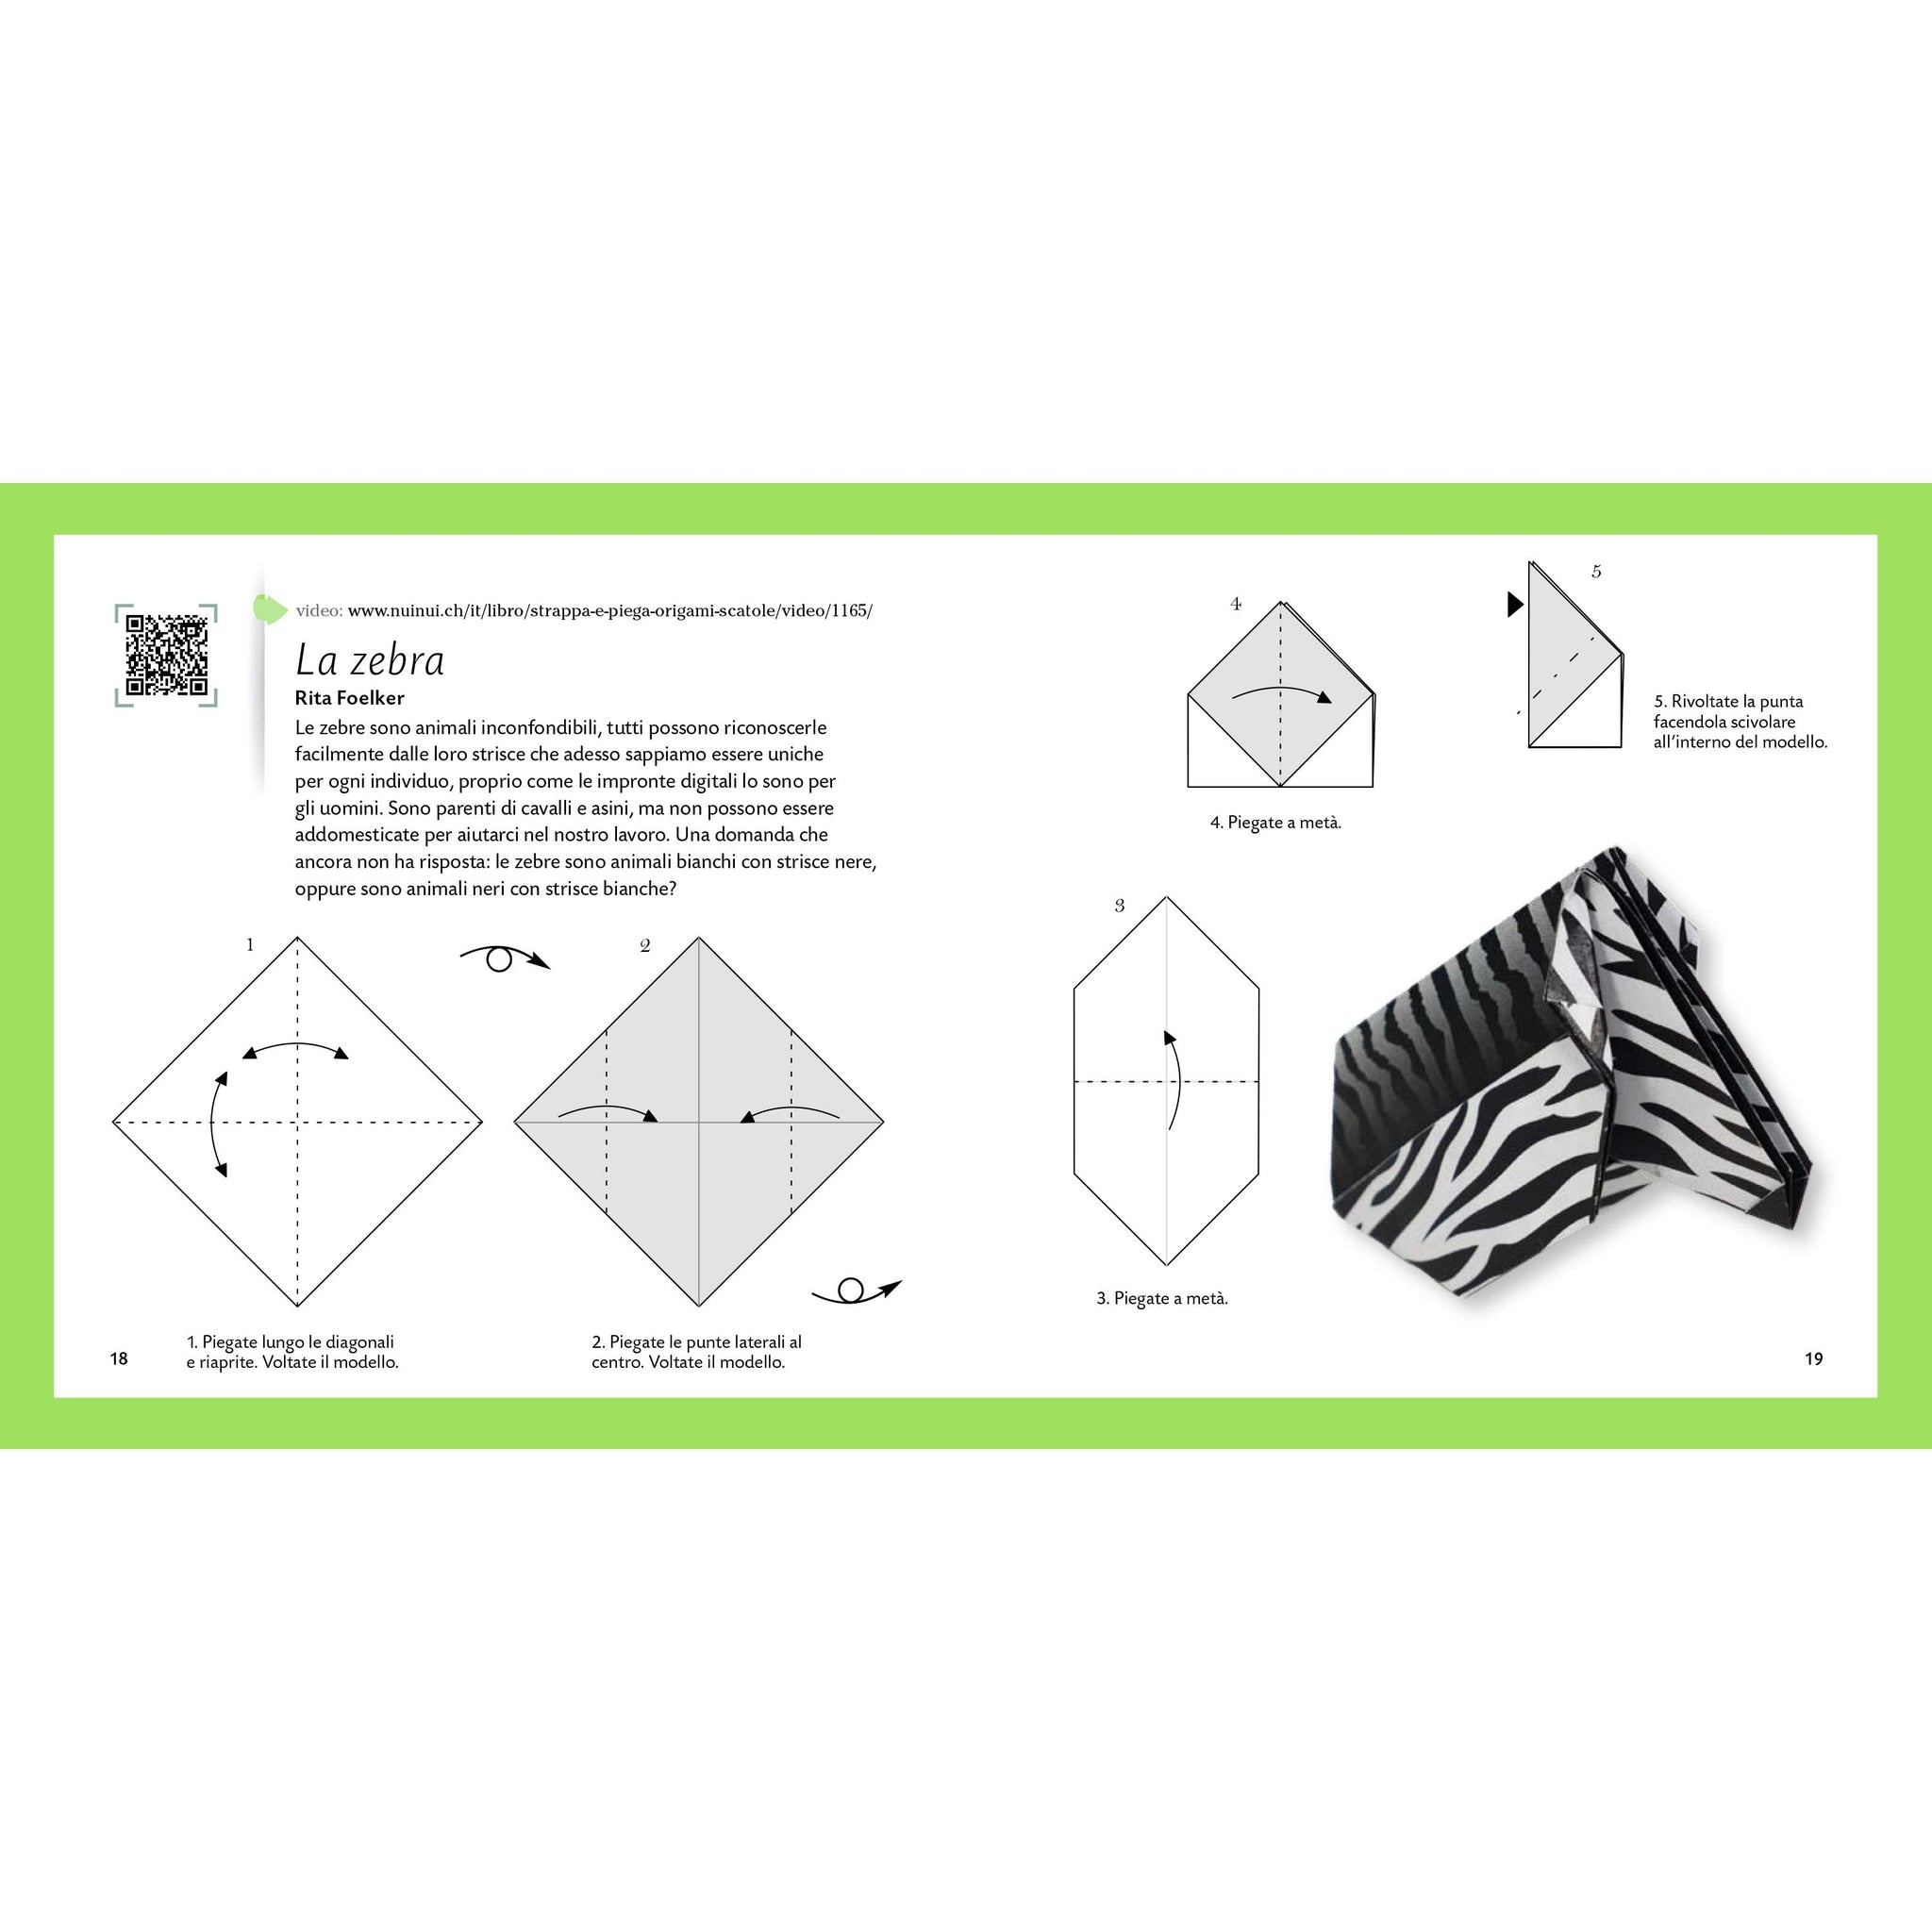 Origami giungla - Strappa e piega